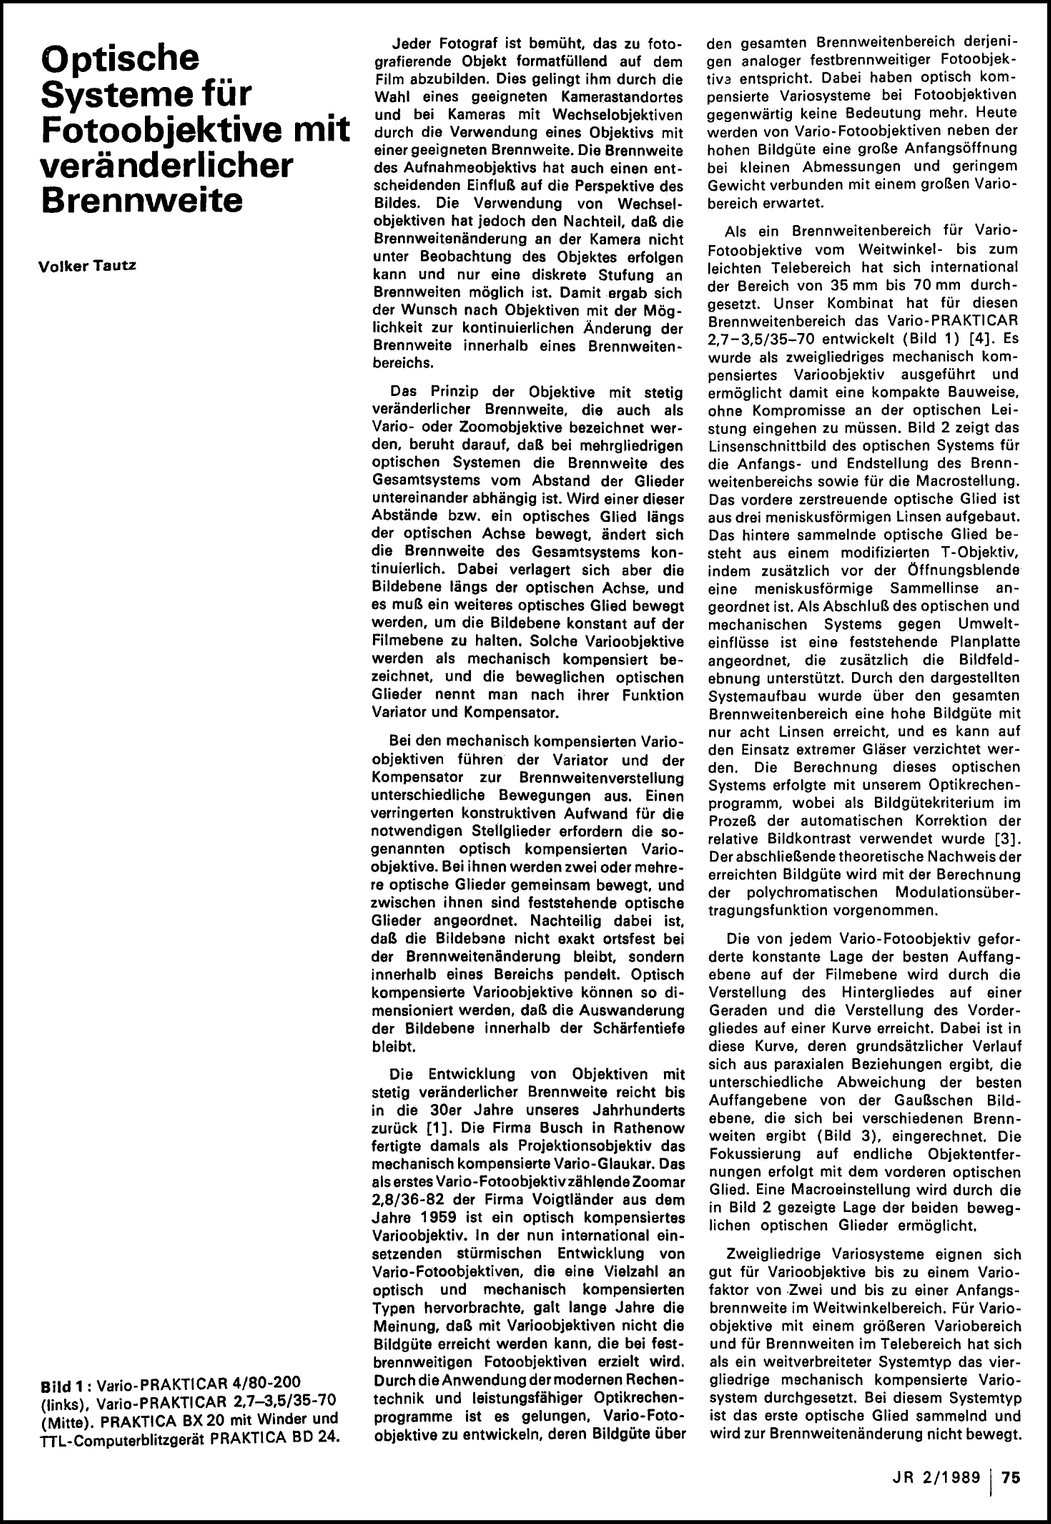 Vario-Prakticare, Jenaer Jahrbuch 2-1989